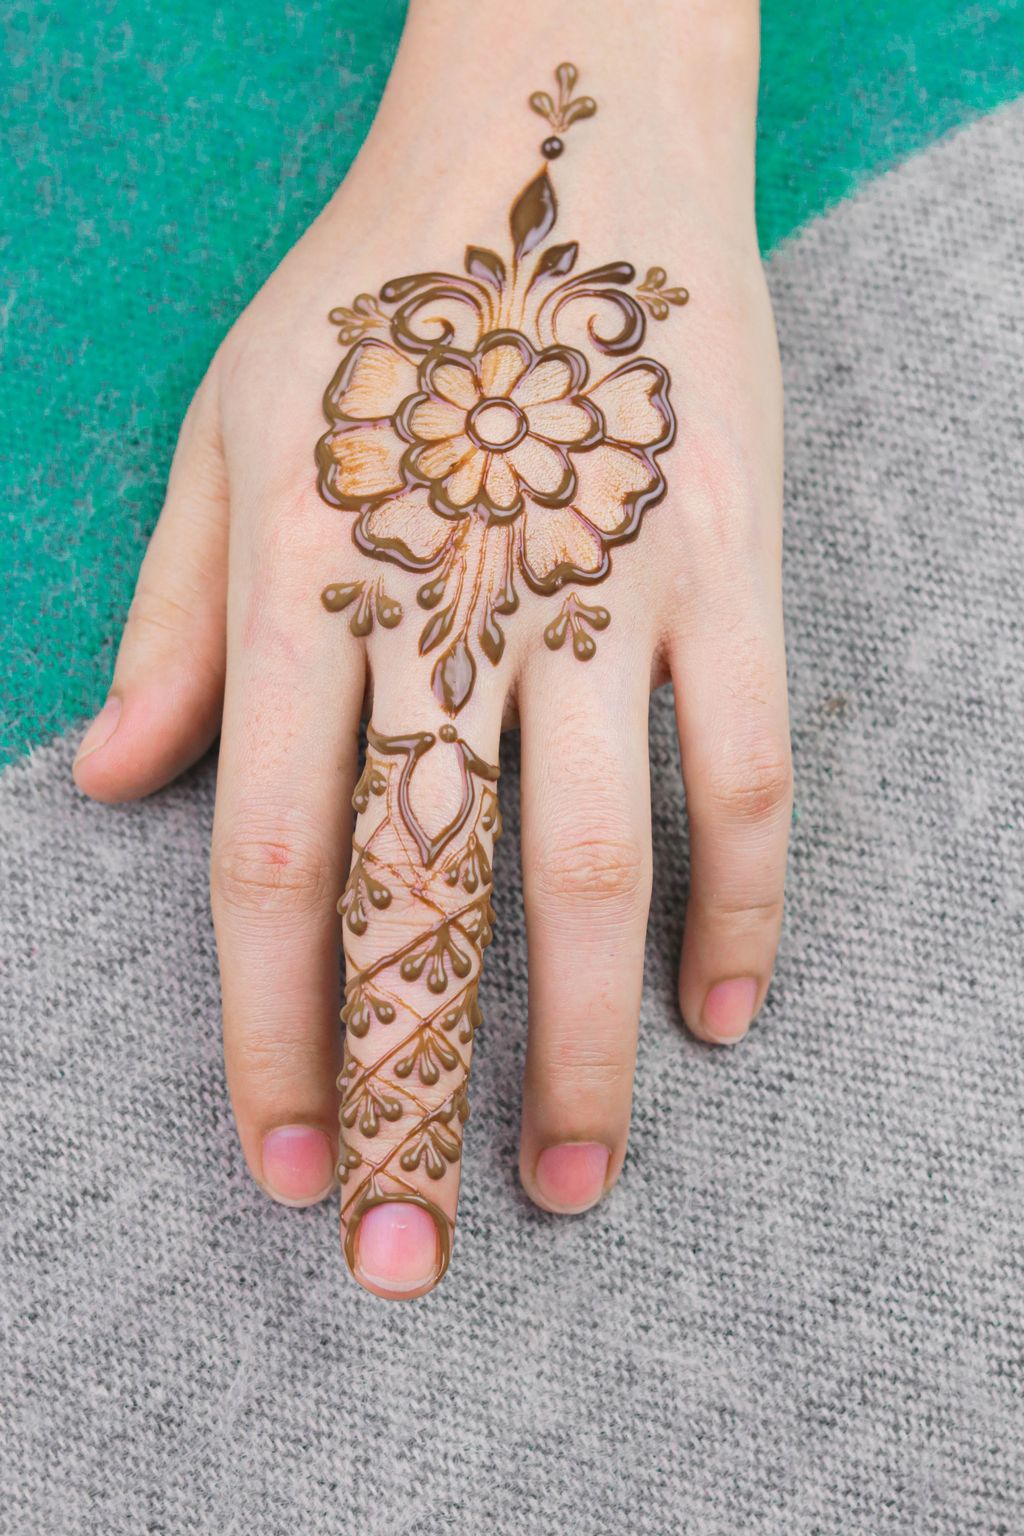 Contoh motif gambar henna simple yang mudah ditiru.